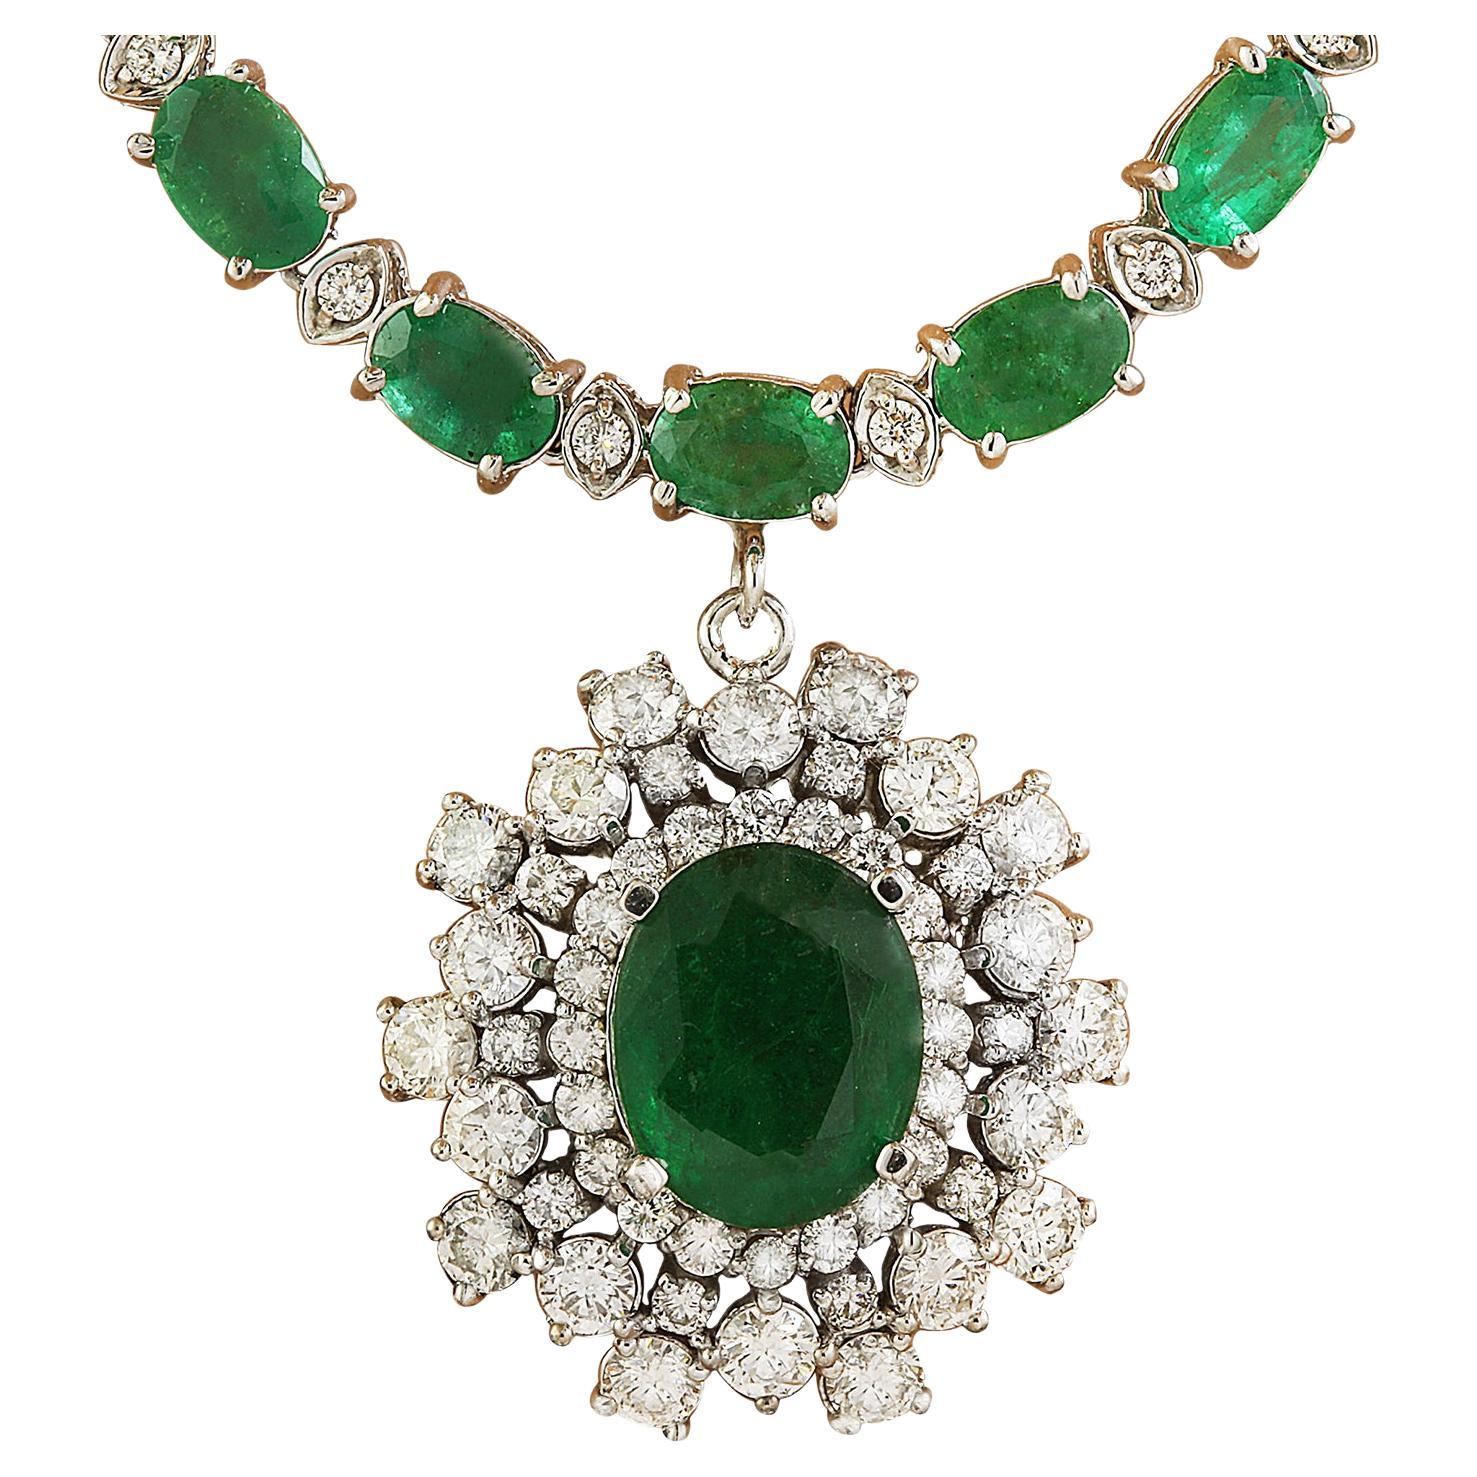 Natürliche Smaragd-Diamant-Halskette aus 14 Karat massivem Weißgold 